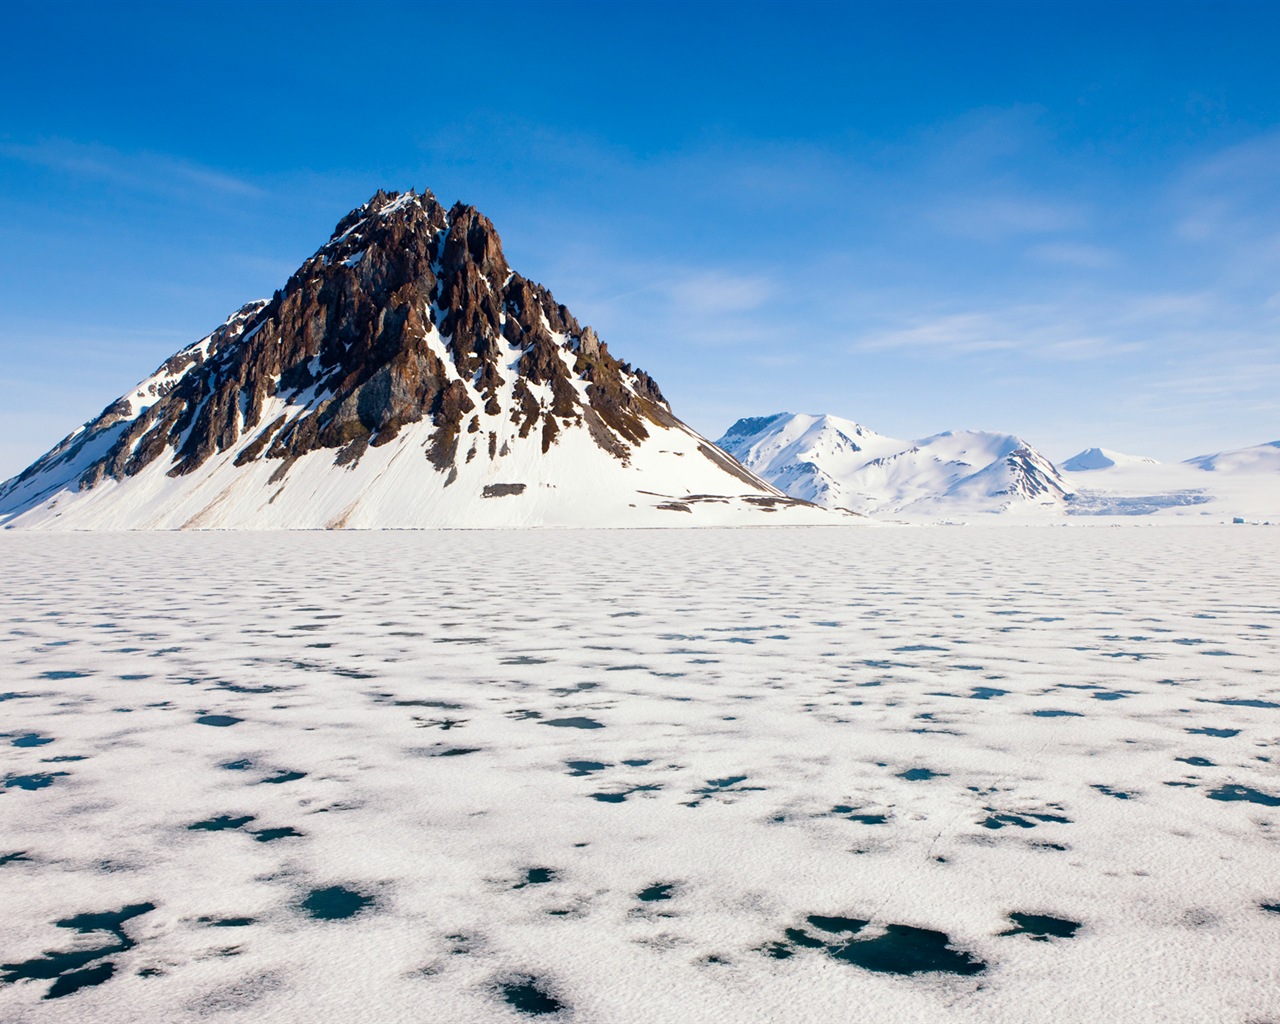 Windows 8: Fondos del Ártico, el paisaje ecológico, ártico animales #1 - 1280x1024